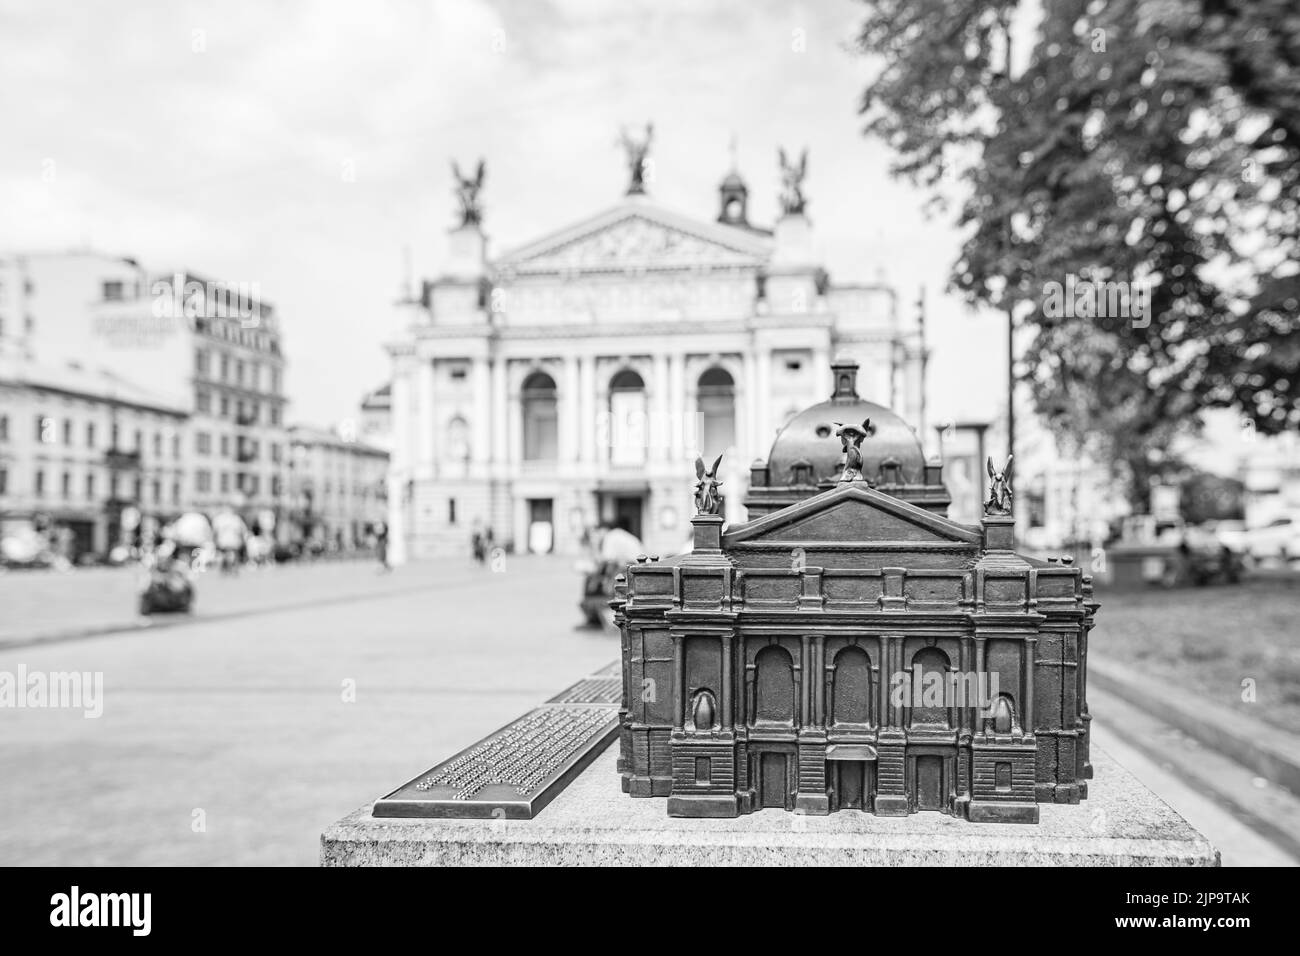 Lviv, Ukraine - 16 août 2022: Modèle de l'Opéra national de Lviv? Uktraine pour les aveugles à voir l'objet architectural Banque D'Images